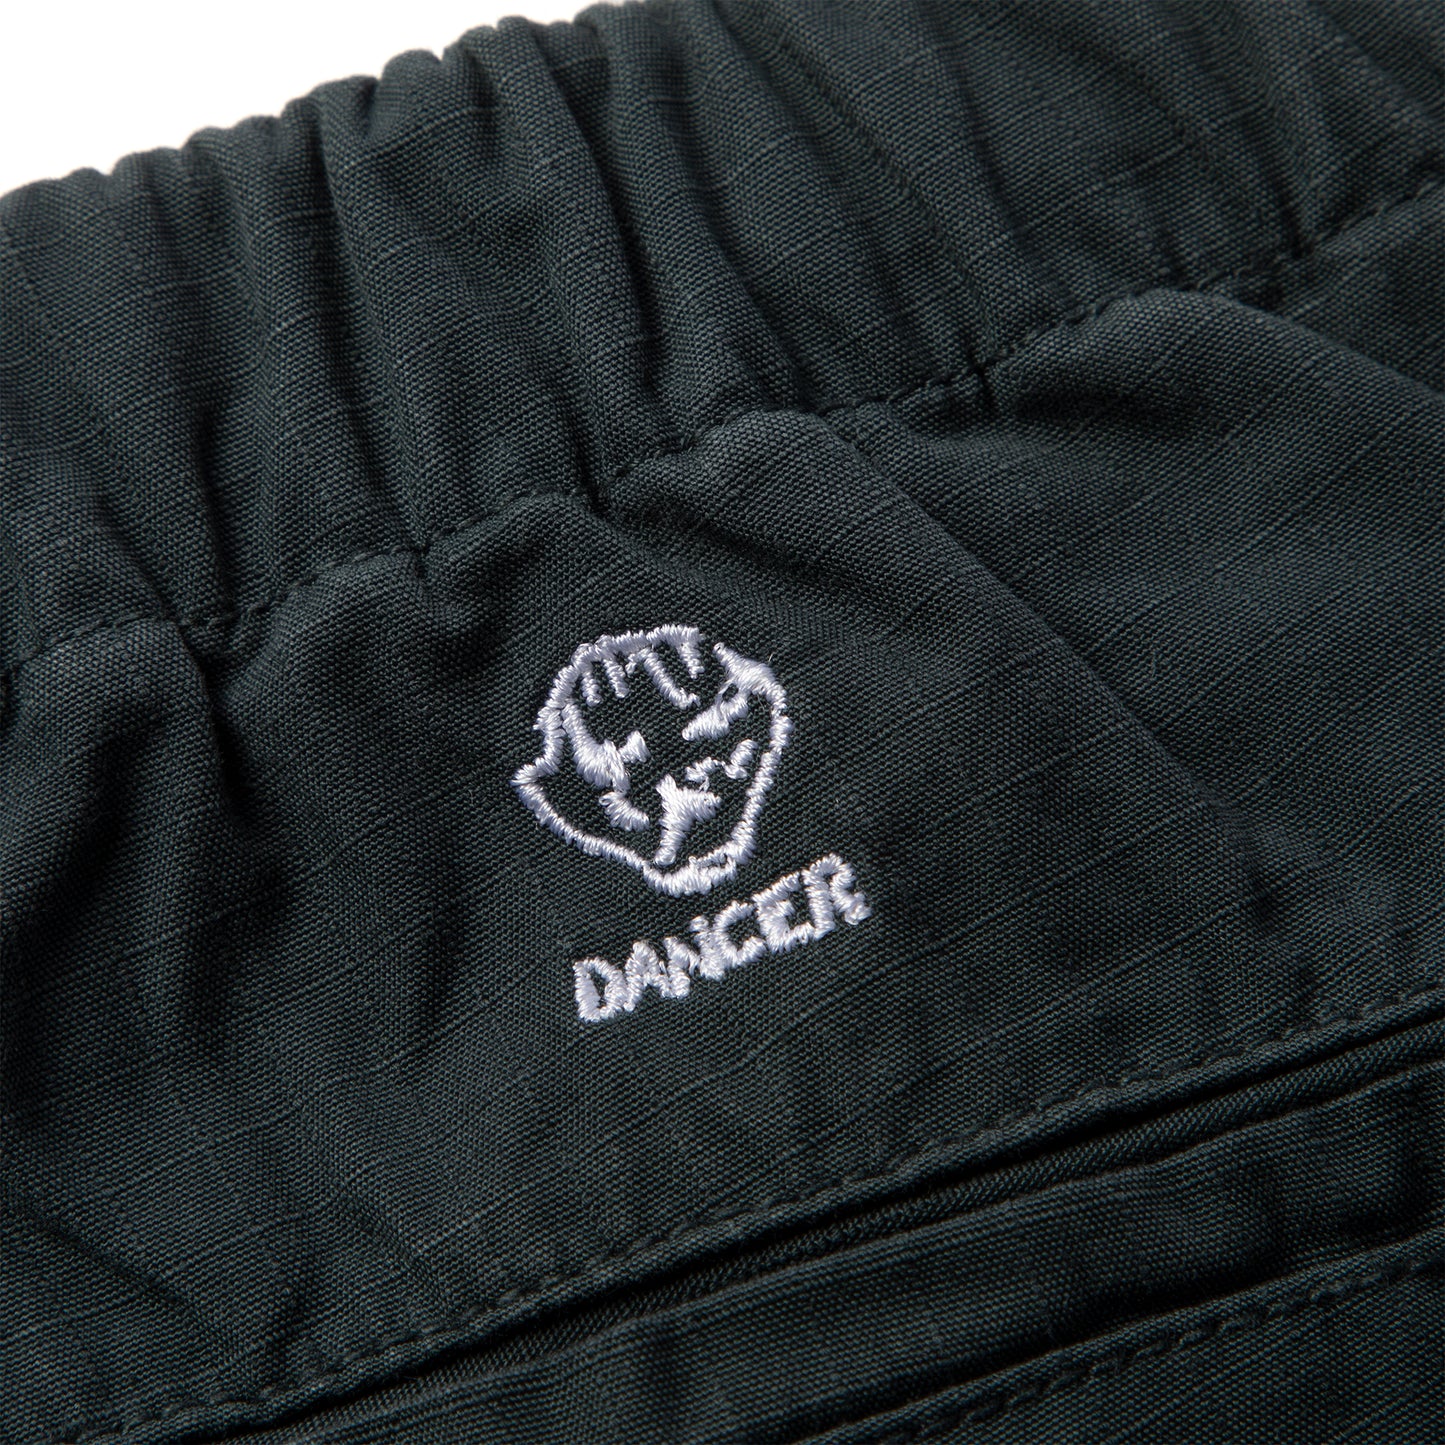 Dancer Belted Simple Pant (Washed Black)